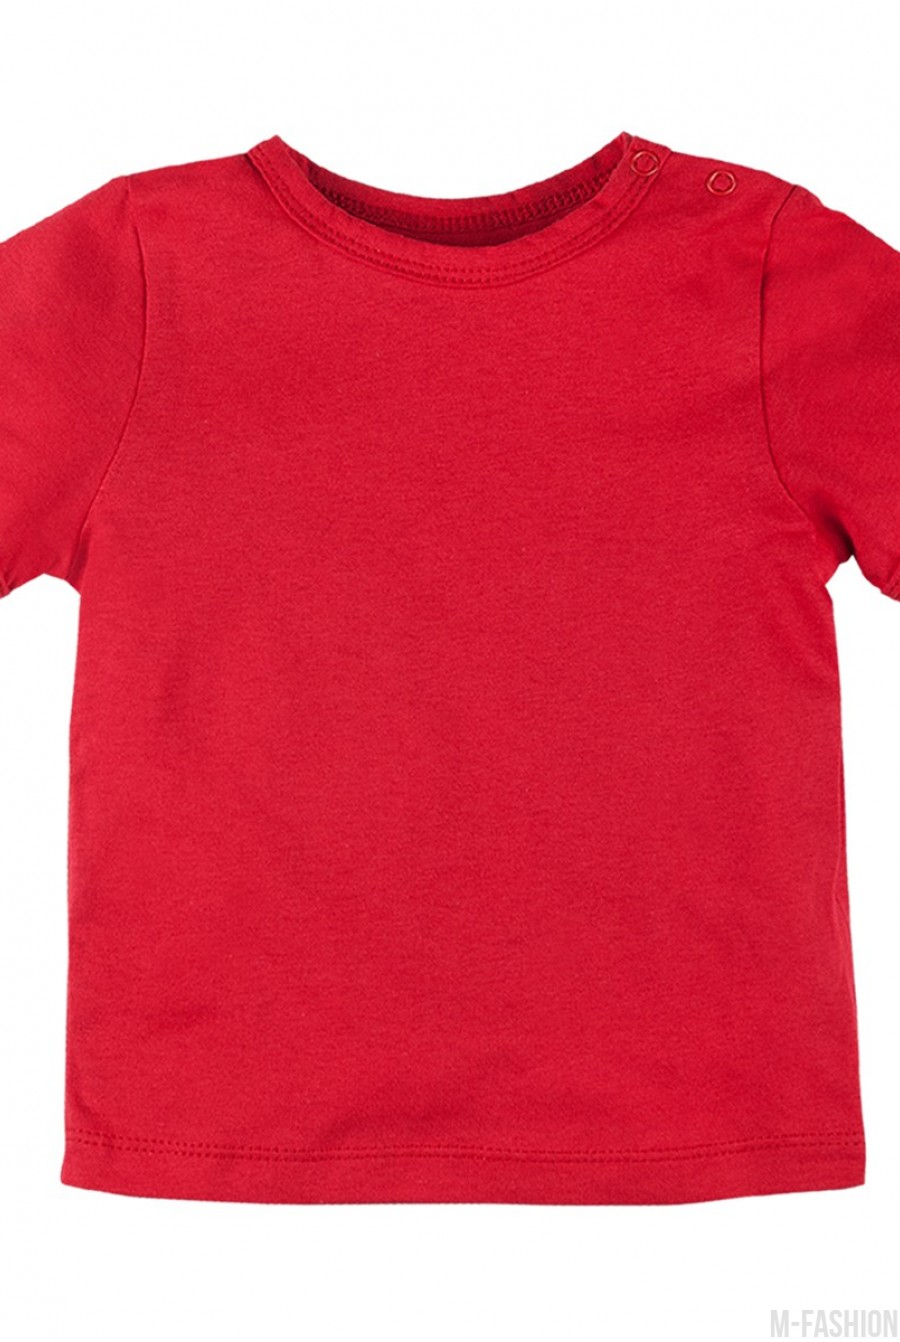 Хлопковая футболка с принтом и возможностью индивидуальной печати фамилии и номера- Фото 2